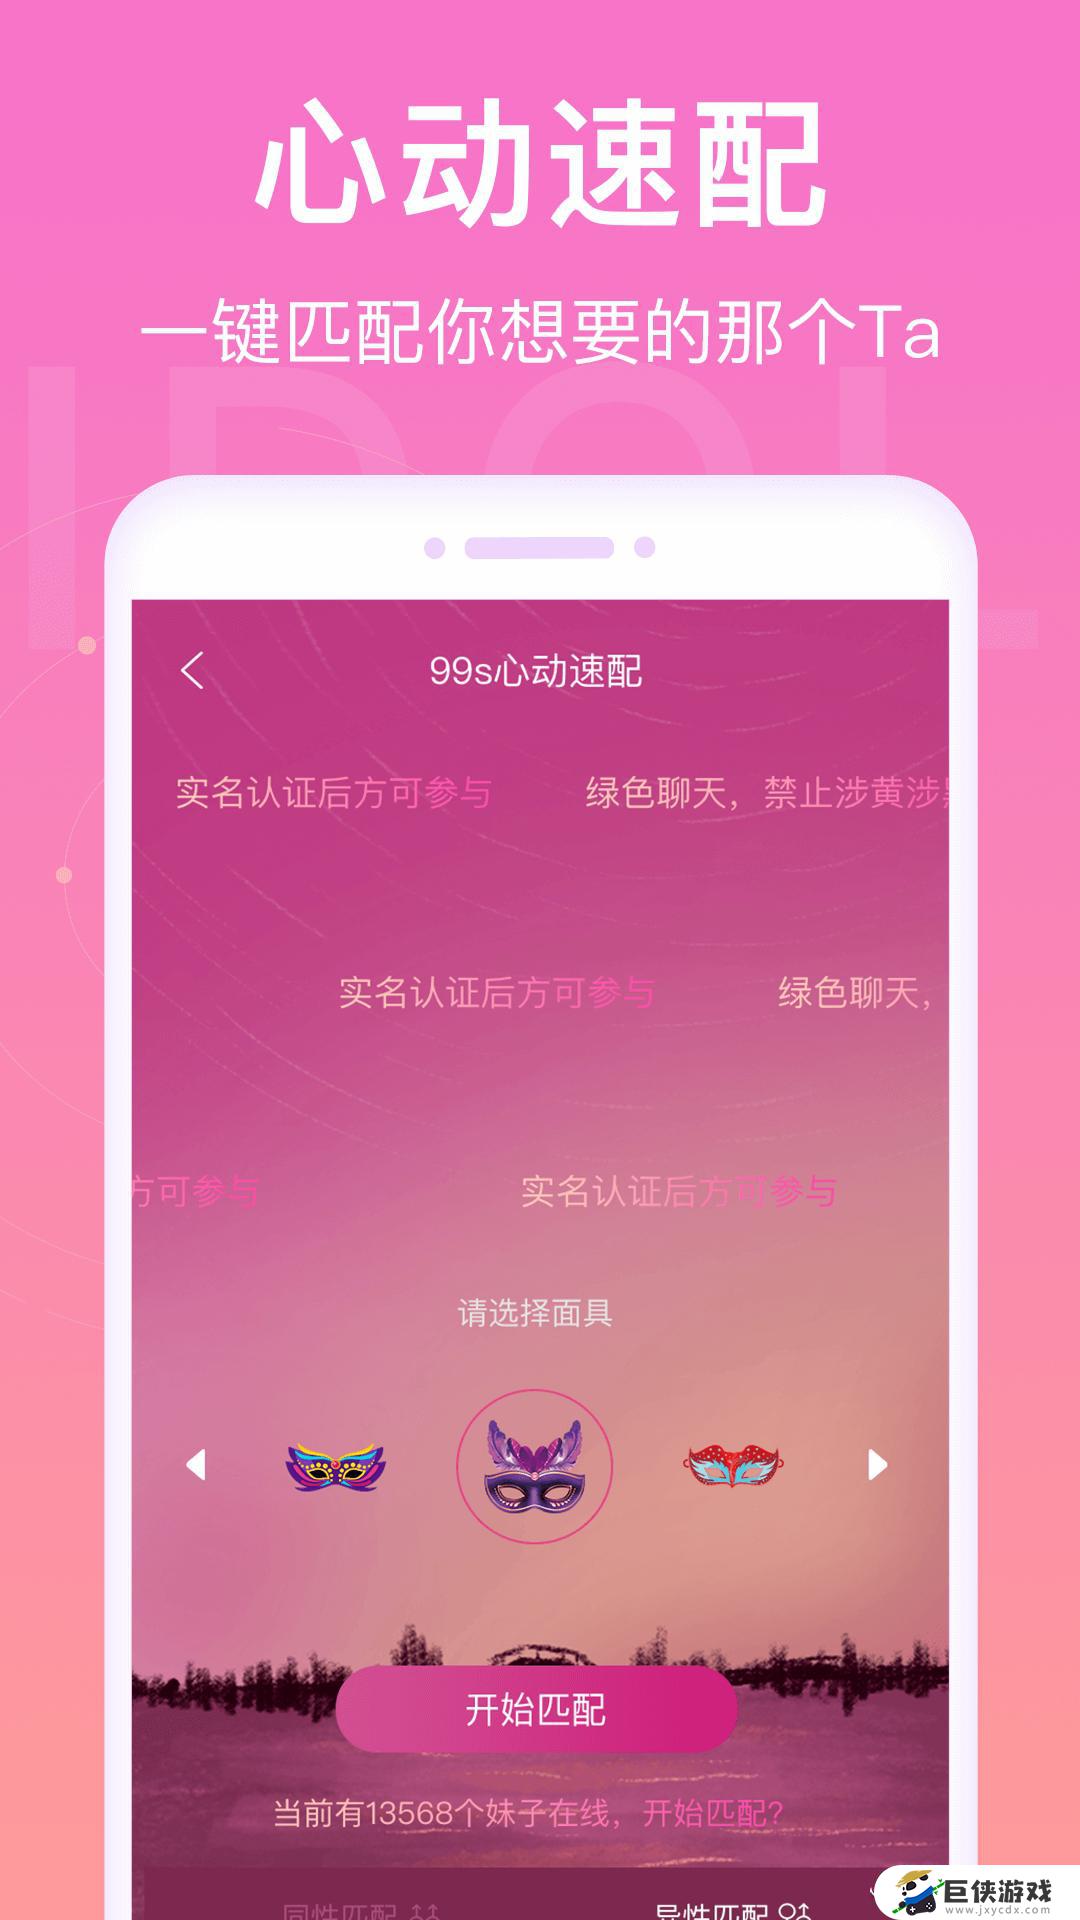 爱豆语音下载app